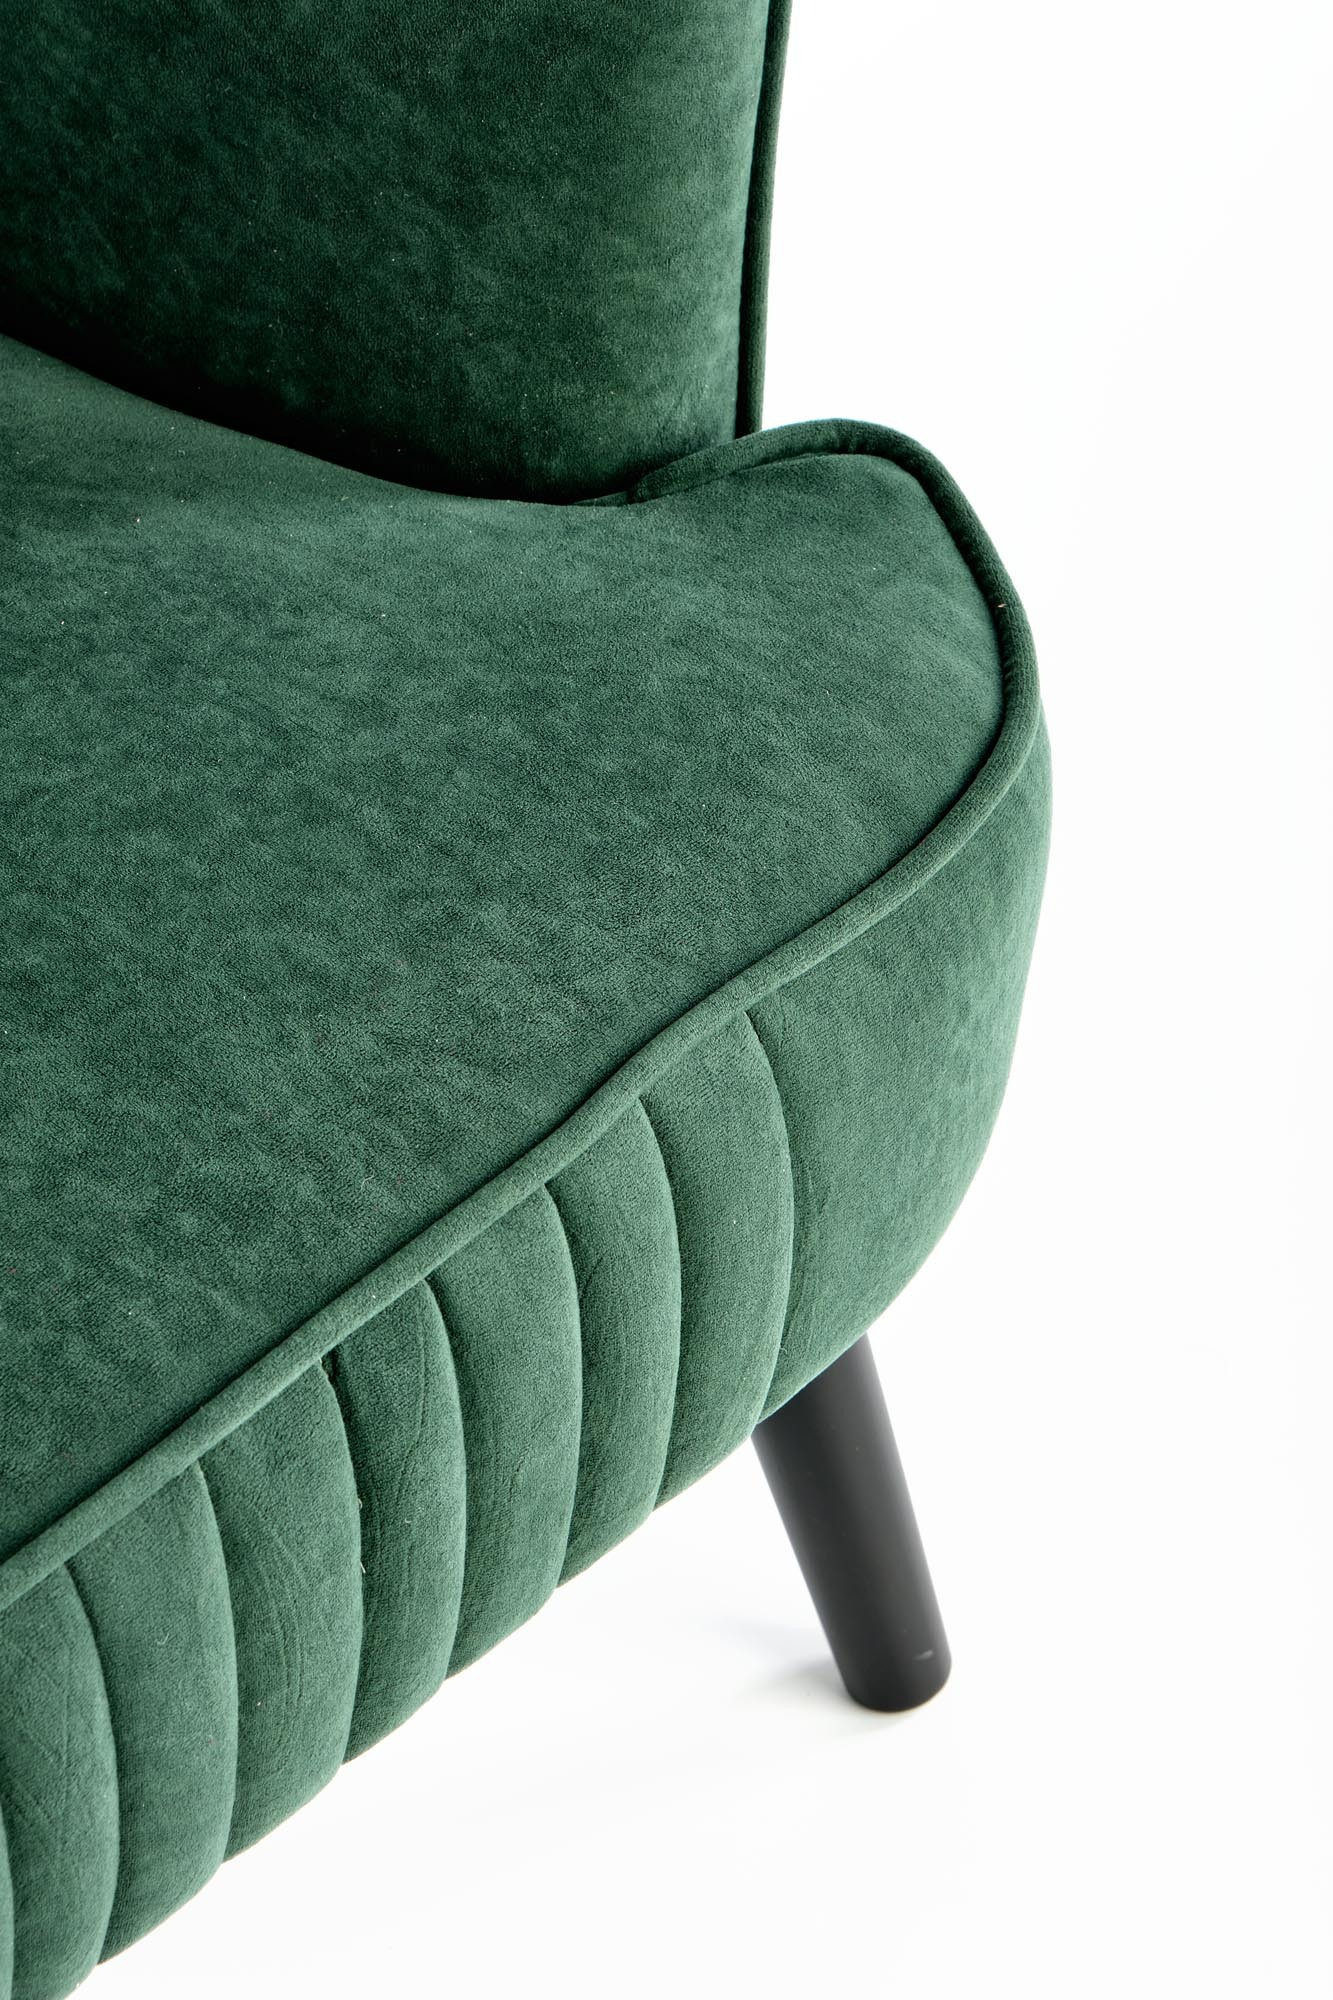 DELGADO fotel wypoczynkowy c. zielony (BLUEVEL #78)